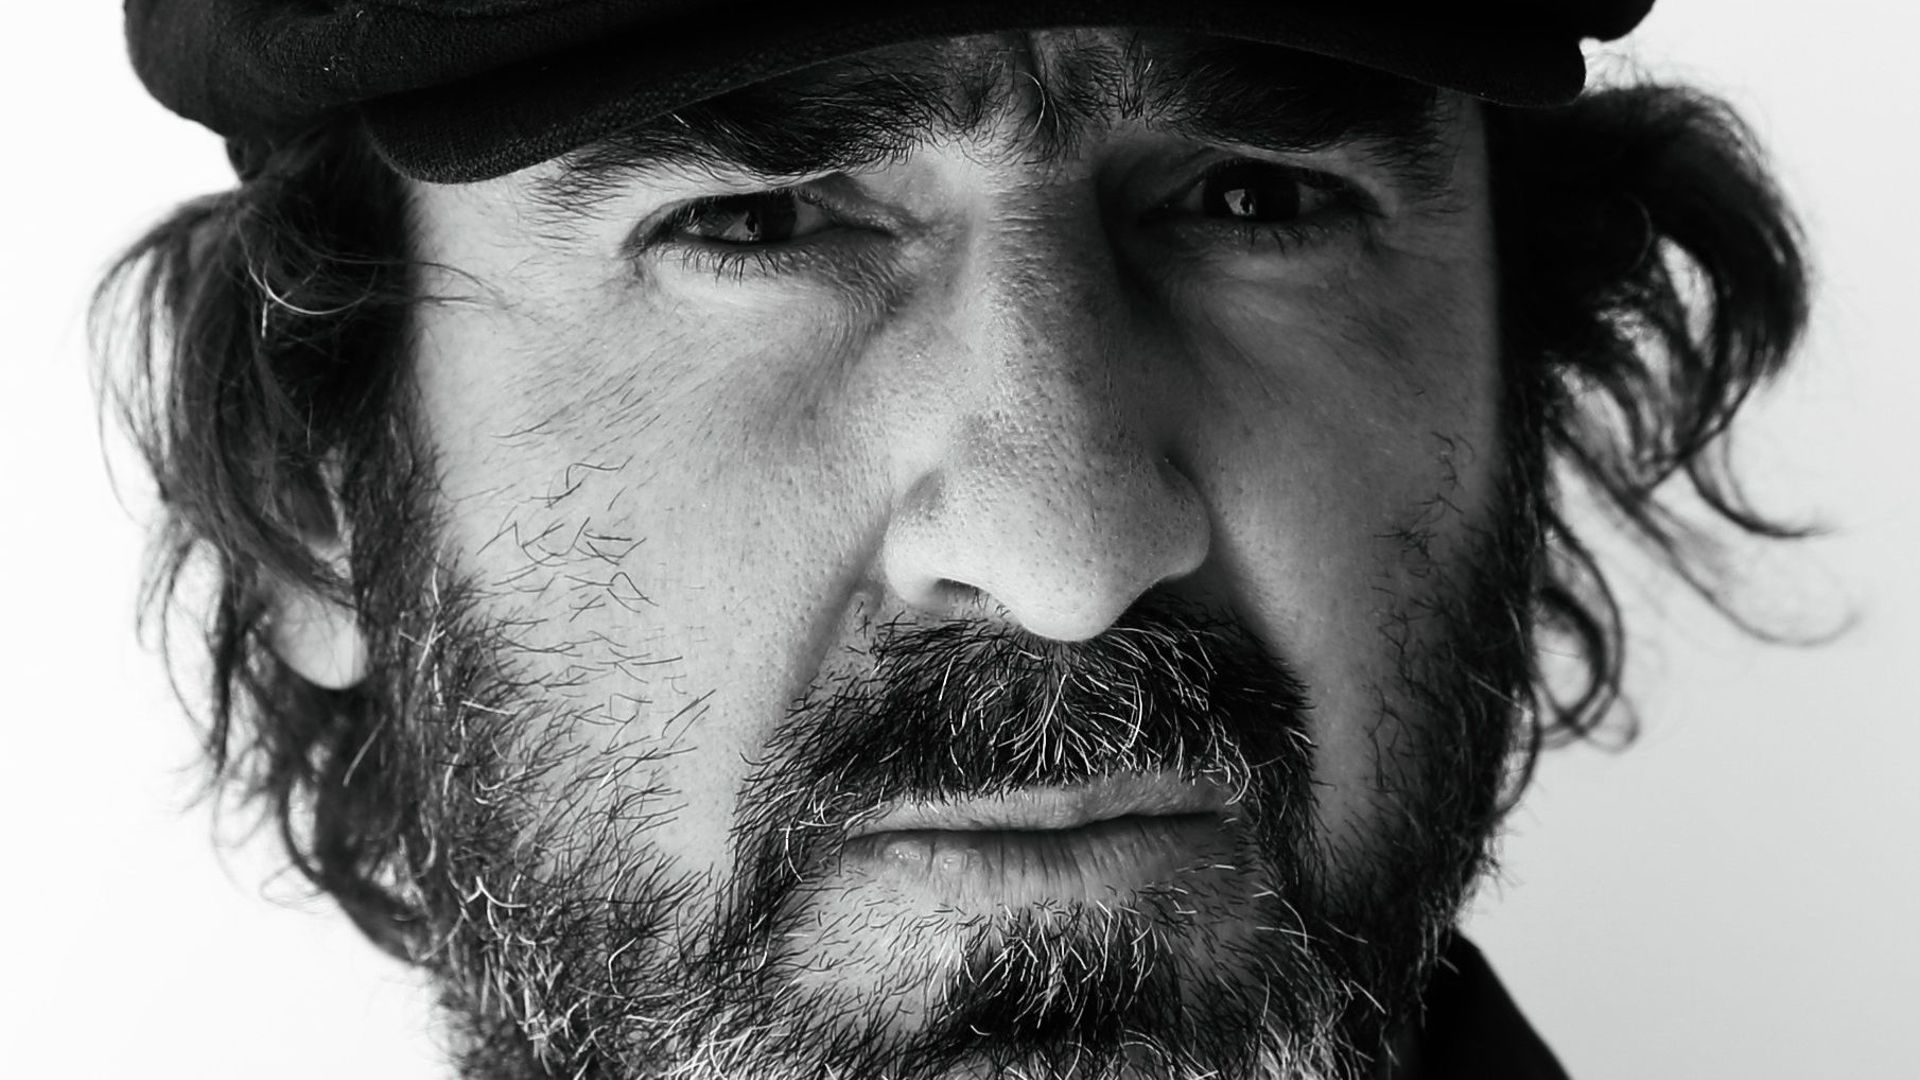 Le Kung-Fu kick d’Eric Cantona en 95 : "C’était une erreur. Mais c’est la vie. C’est moi"